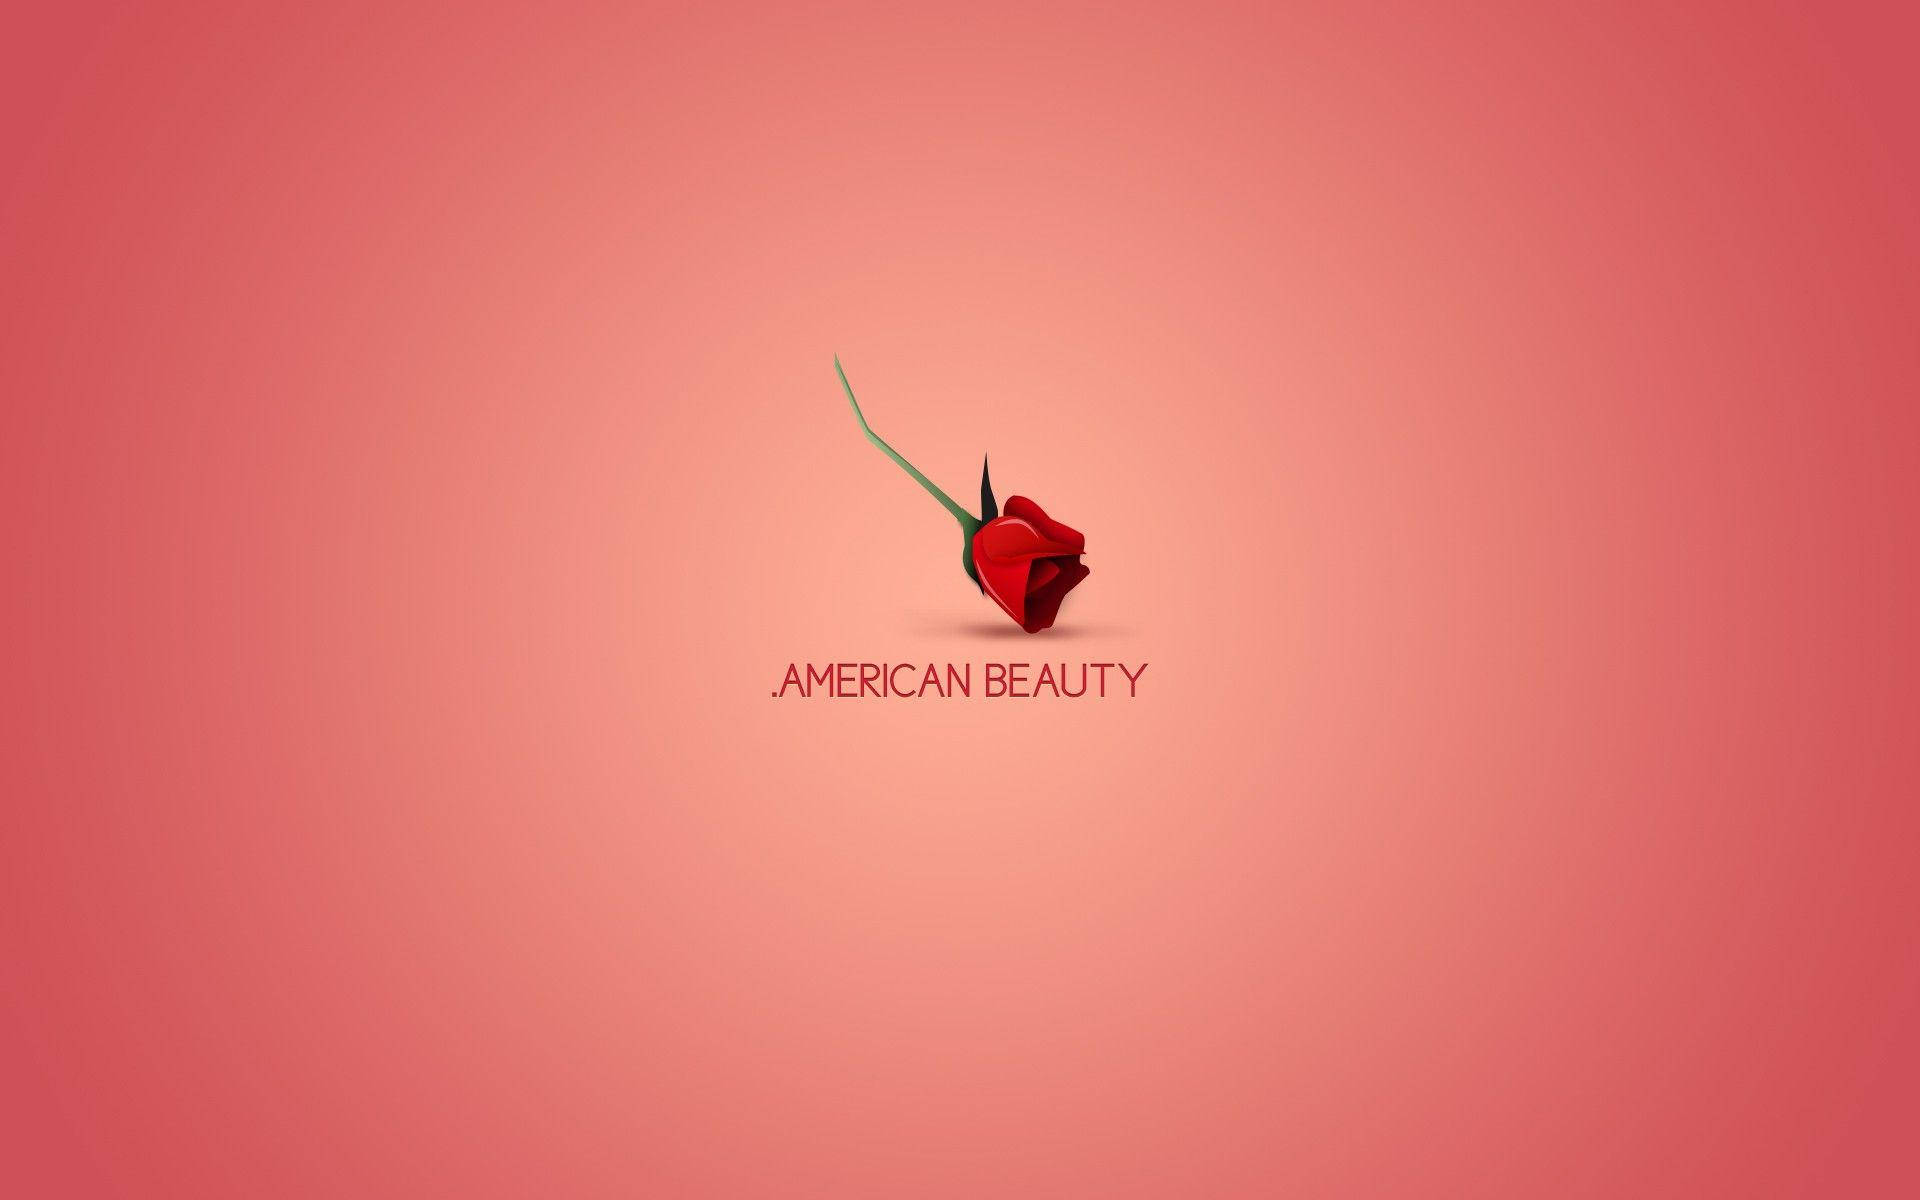 Amerikanischeschönheit - Umgedrehte Rose Wallpaper